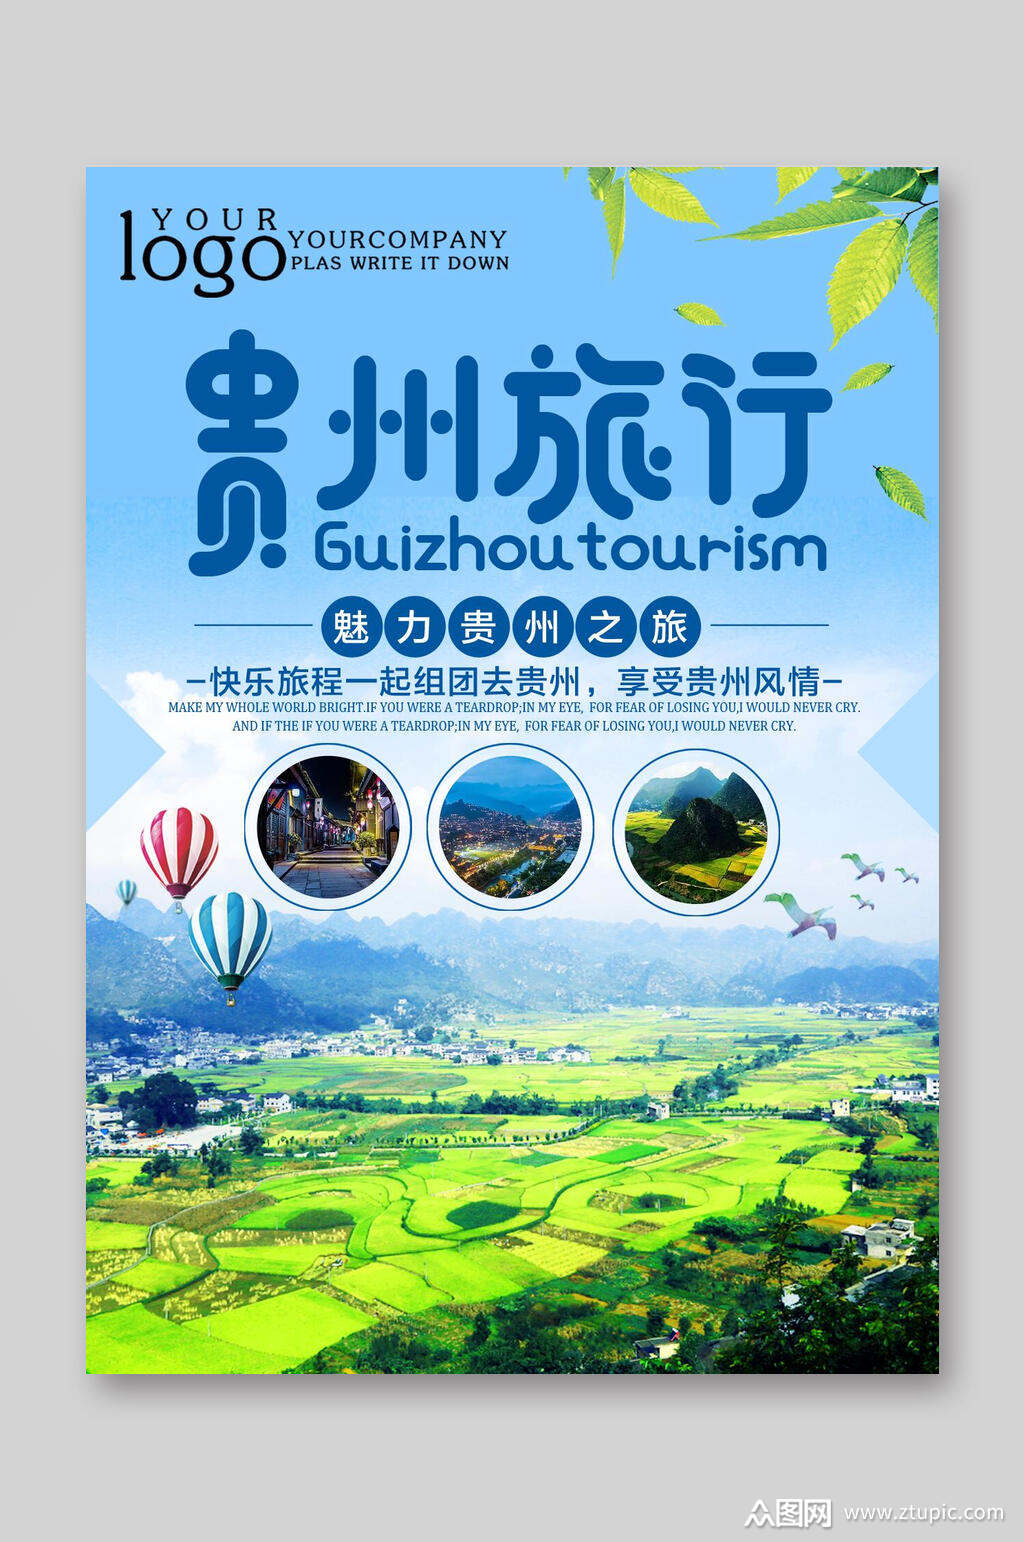 贵州旅行旅游宣传单素材免费下载,本作品是由你好上传的原创平面广告